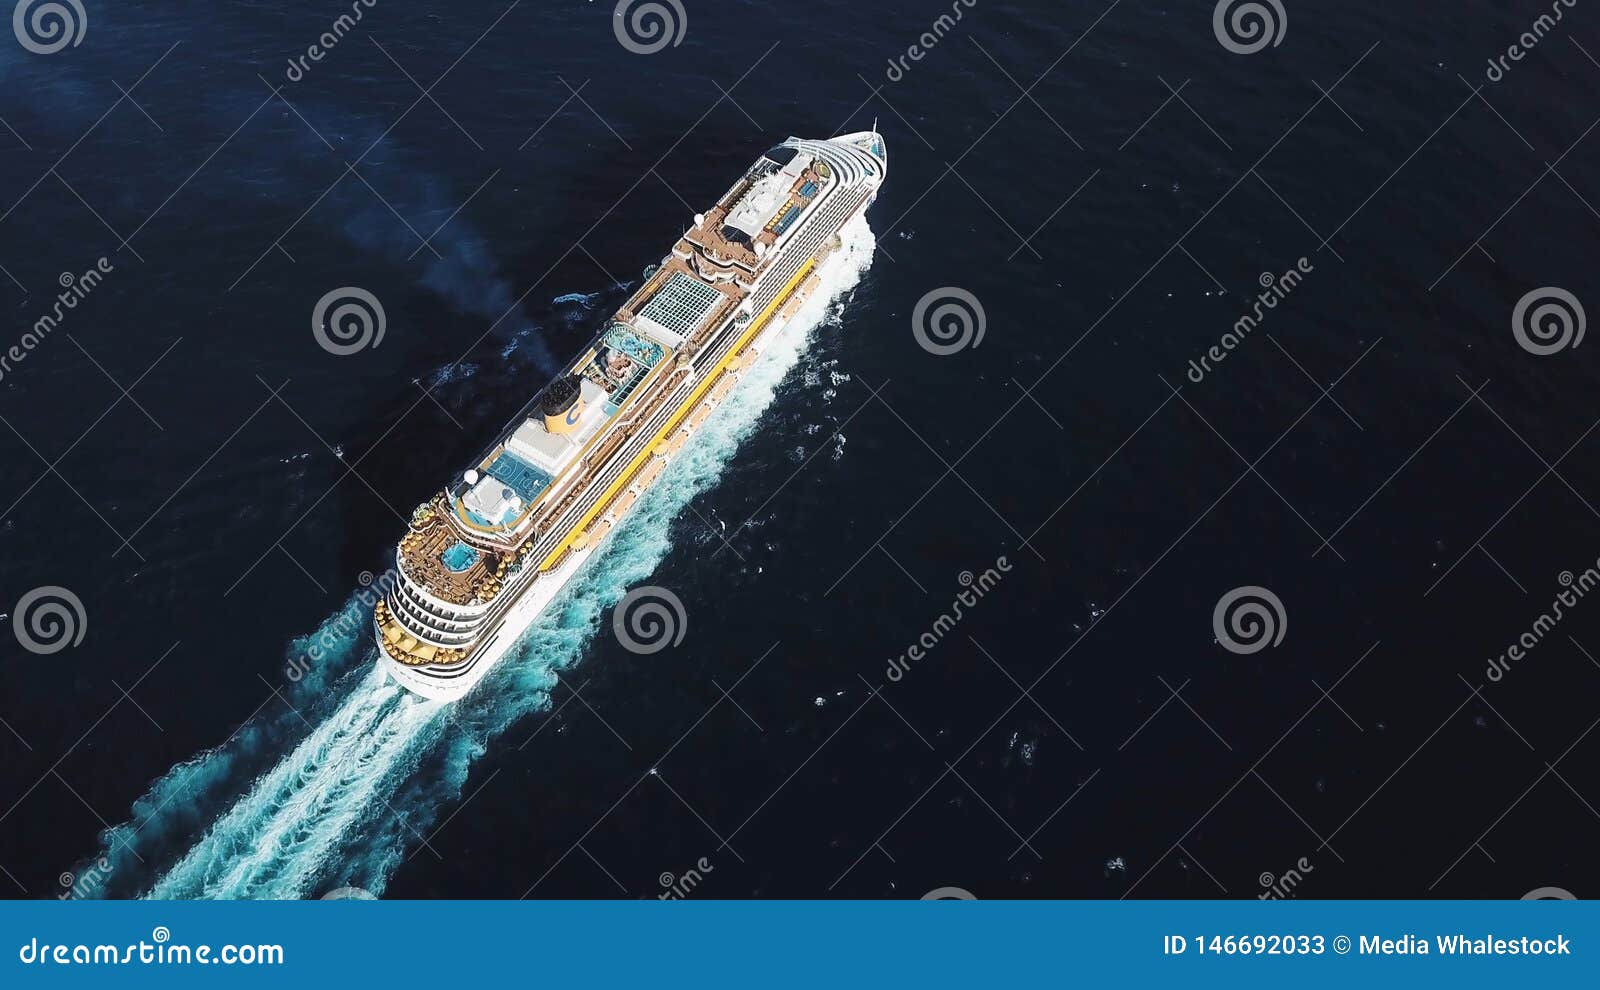 View Beautiful Cruise Ship Photos